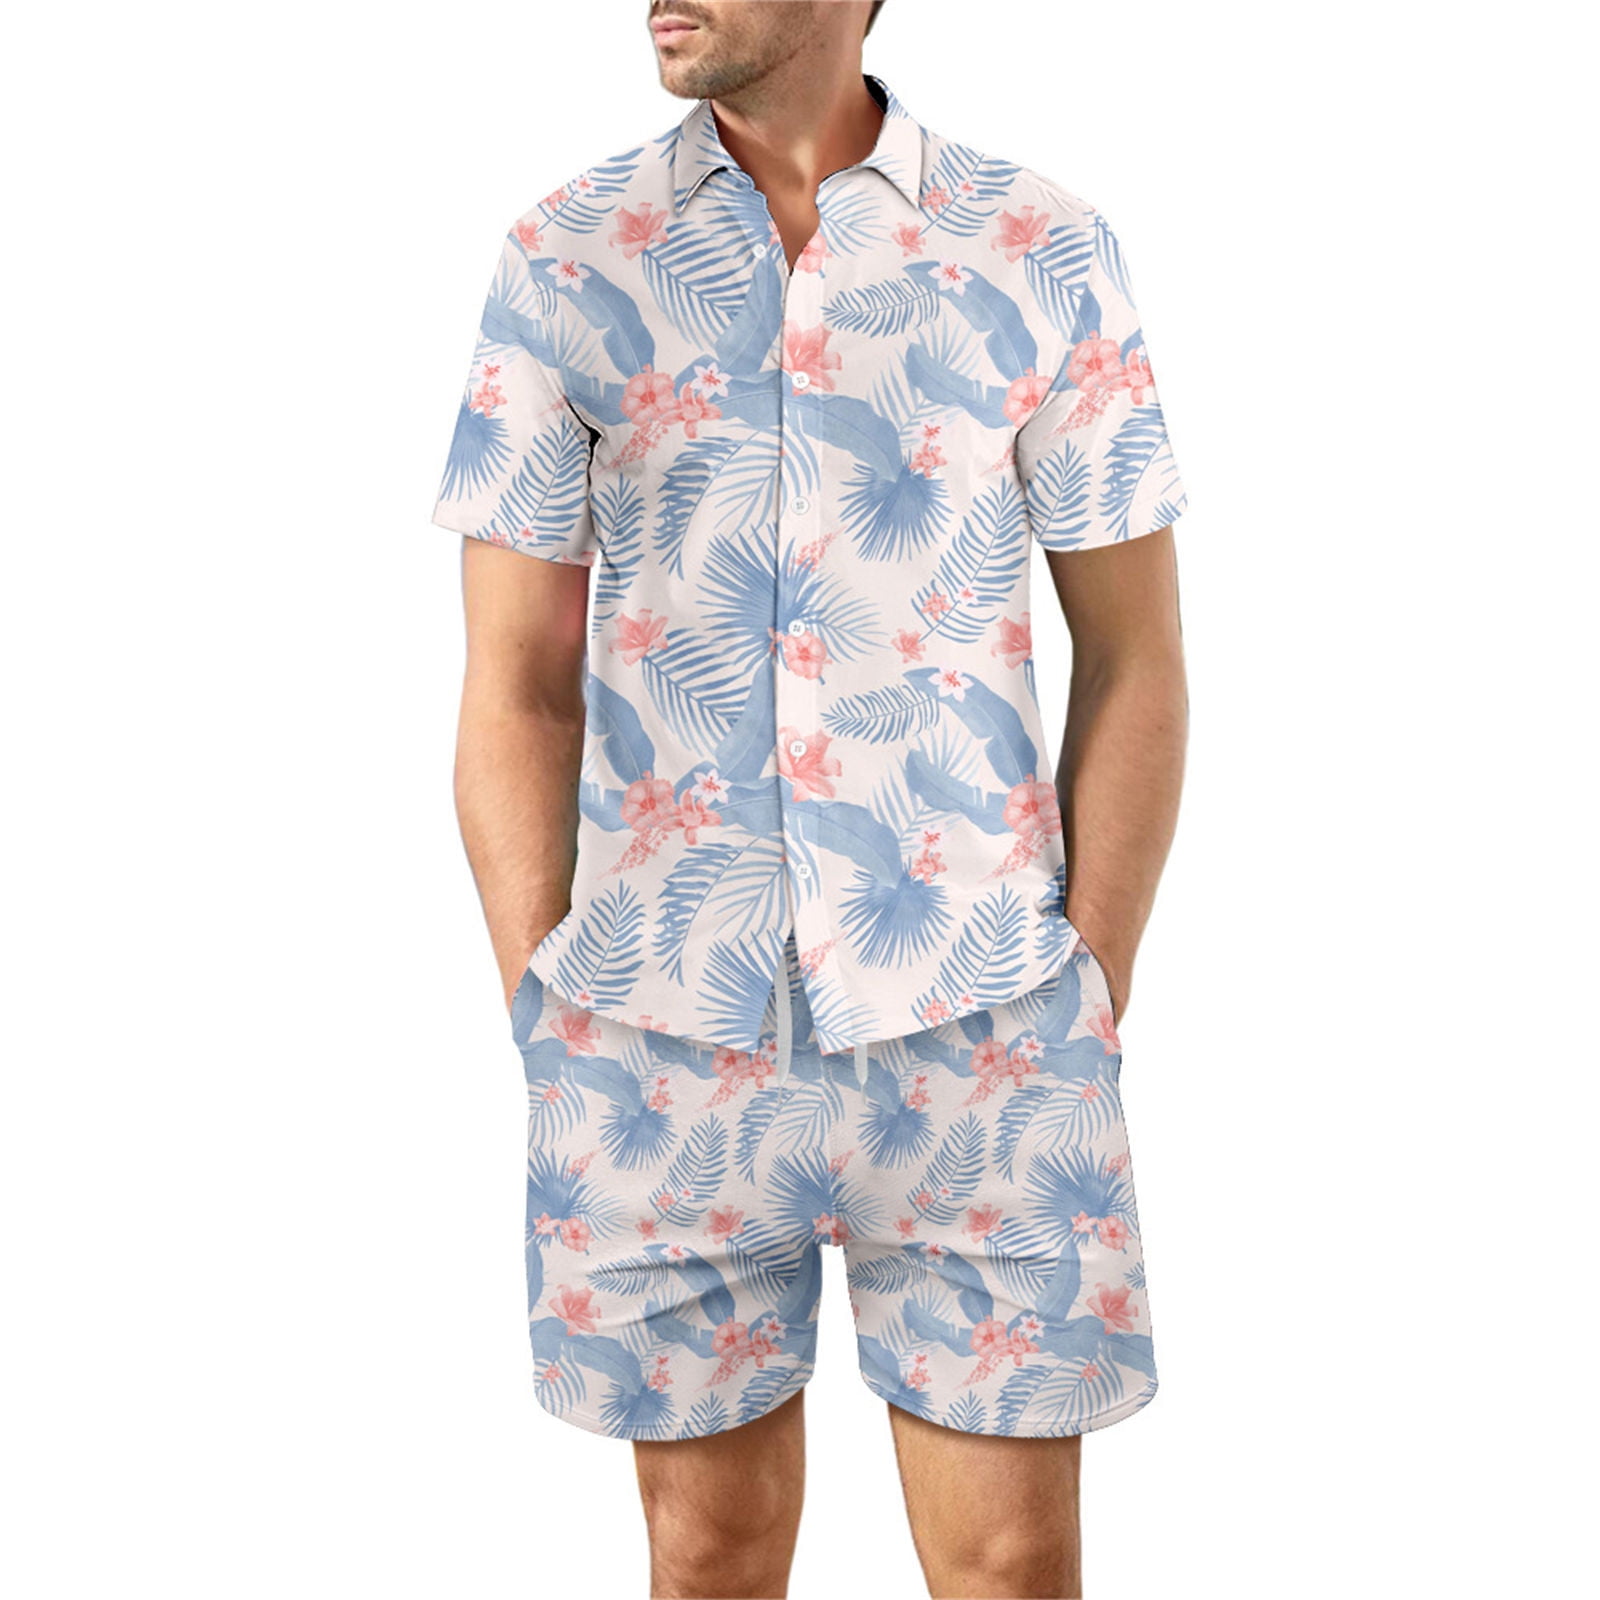 INCERUN Mens Short Swim wear Beach Hippie Causal Tee Shirt Shorts Loungwear Suit